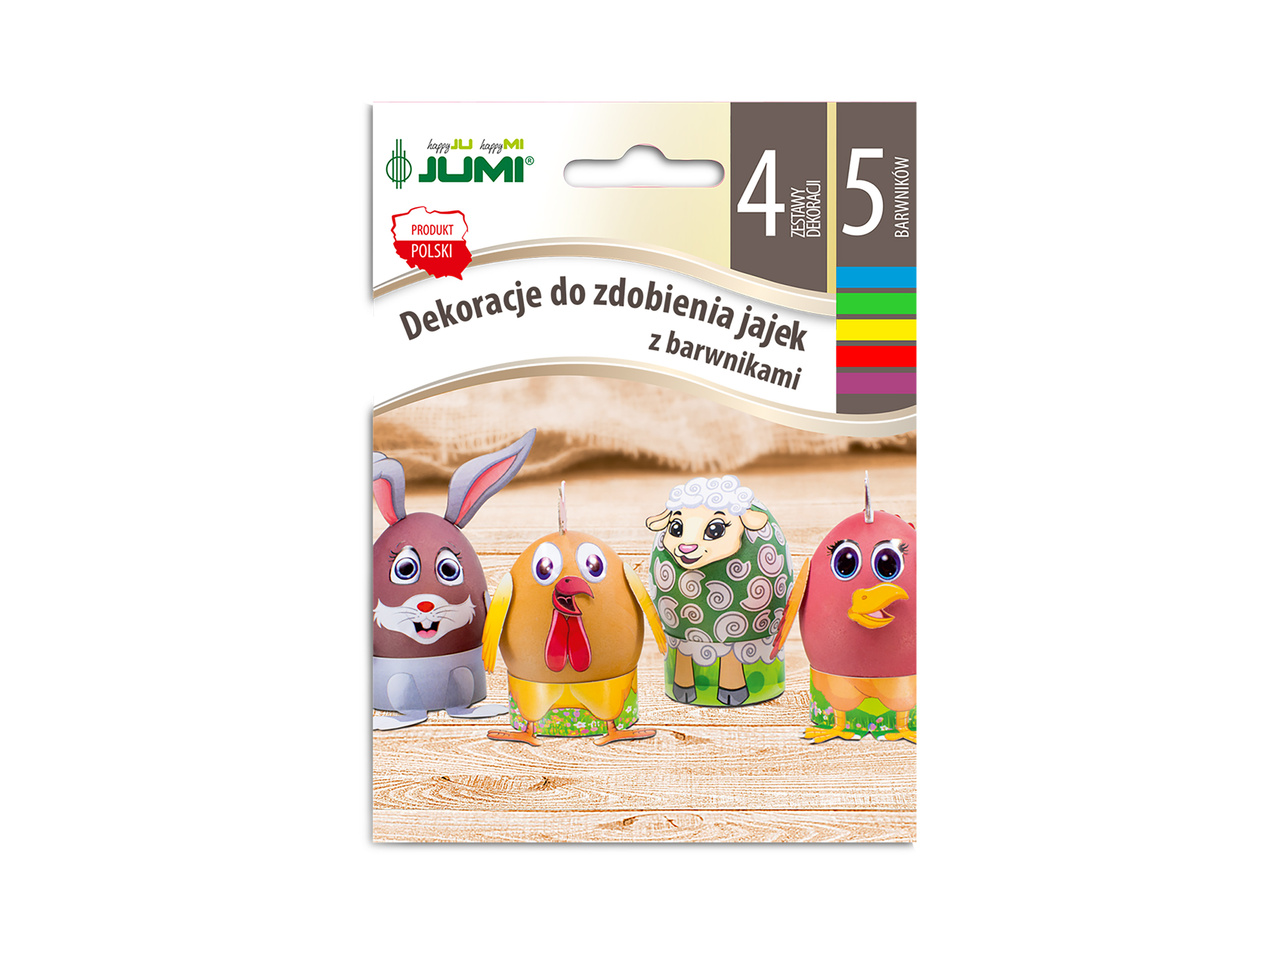 Zestaw do farbowania lub do dekoracji jajek cena 3,49 PLN